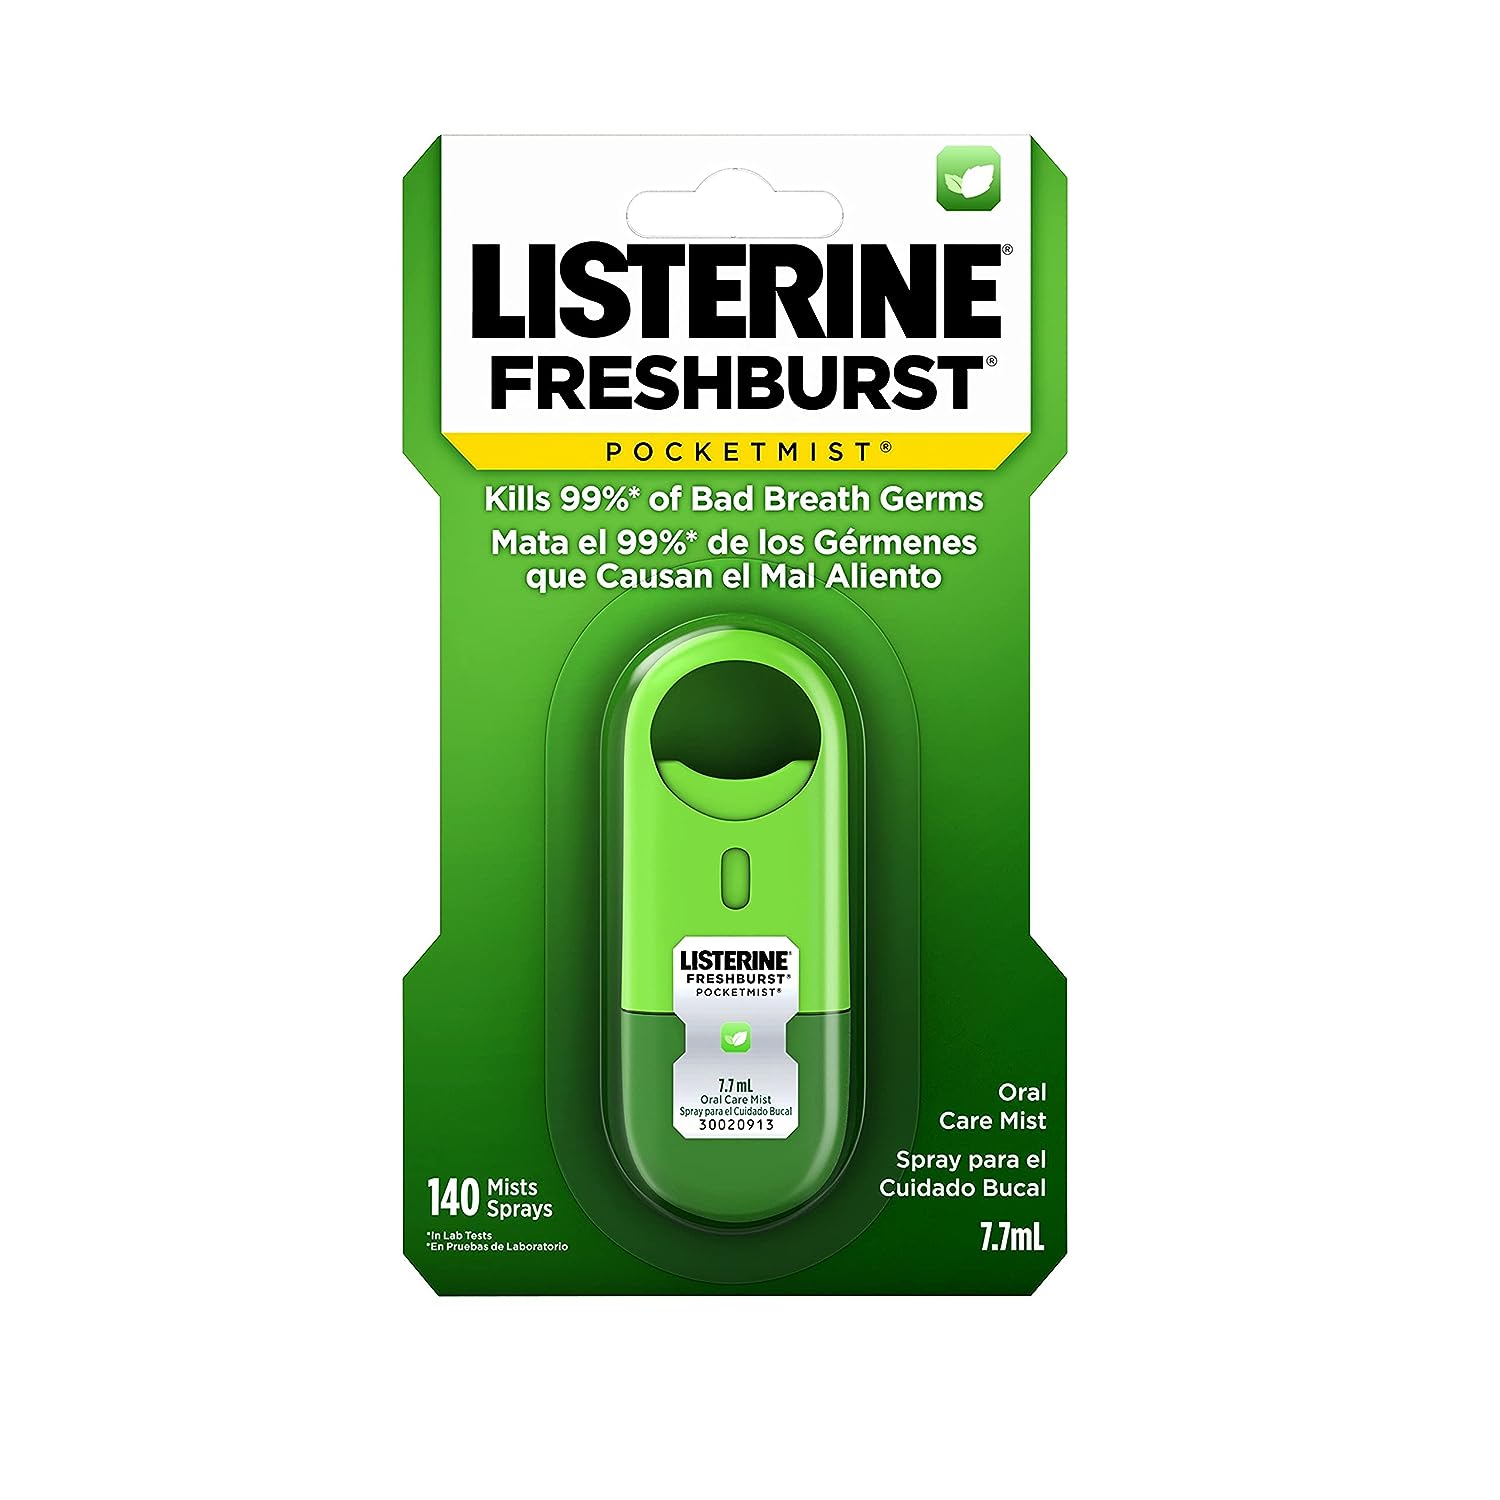 Listerine Freshburst Pocketmist Oral Care Bad Breath Mist (140 mist) Beautiful